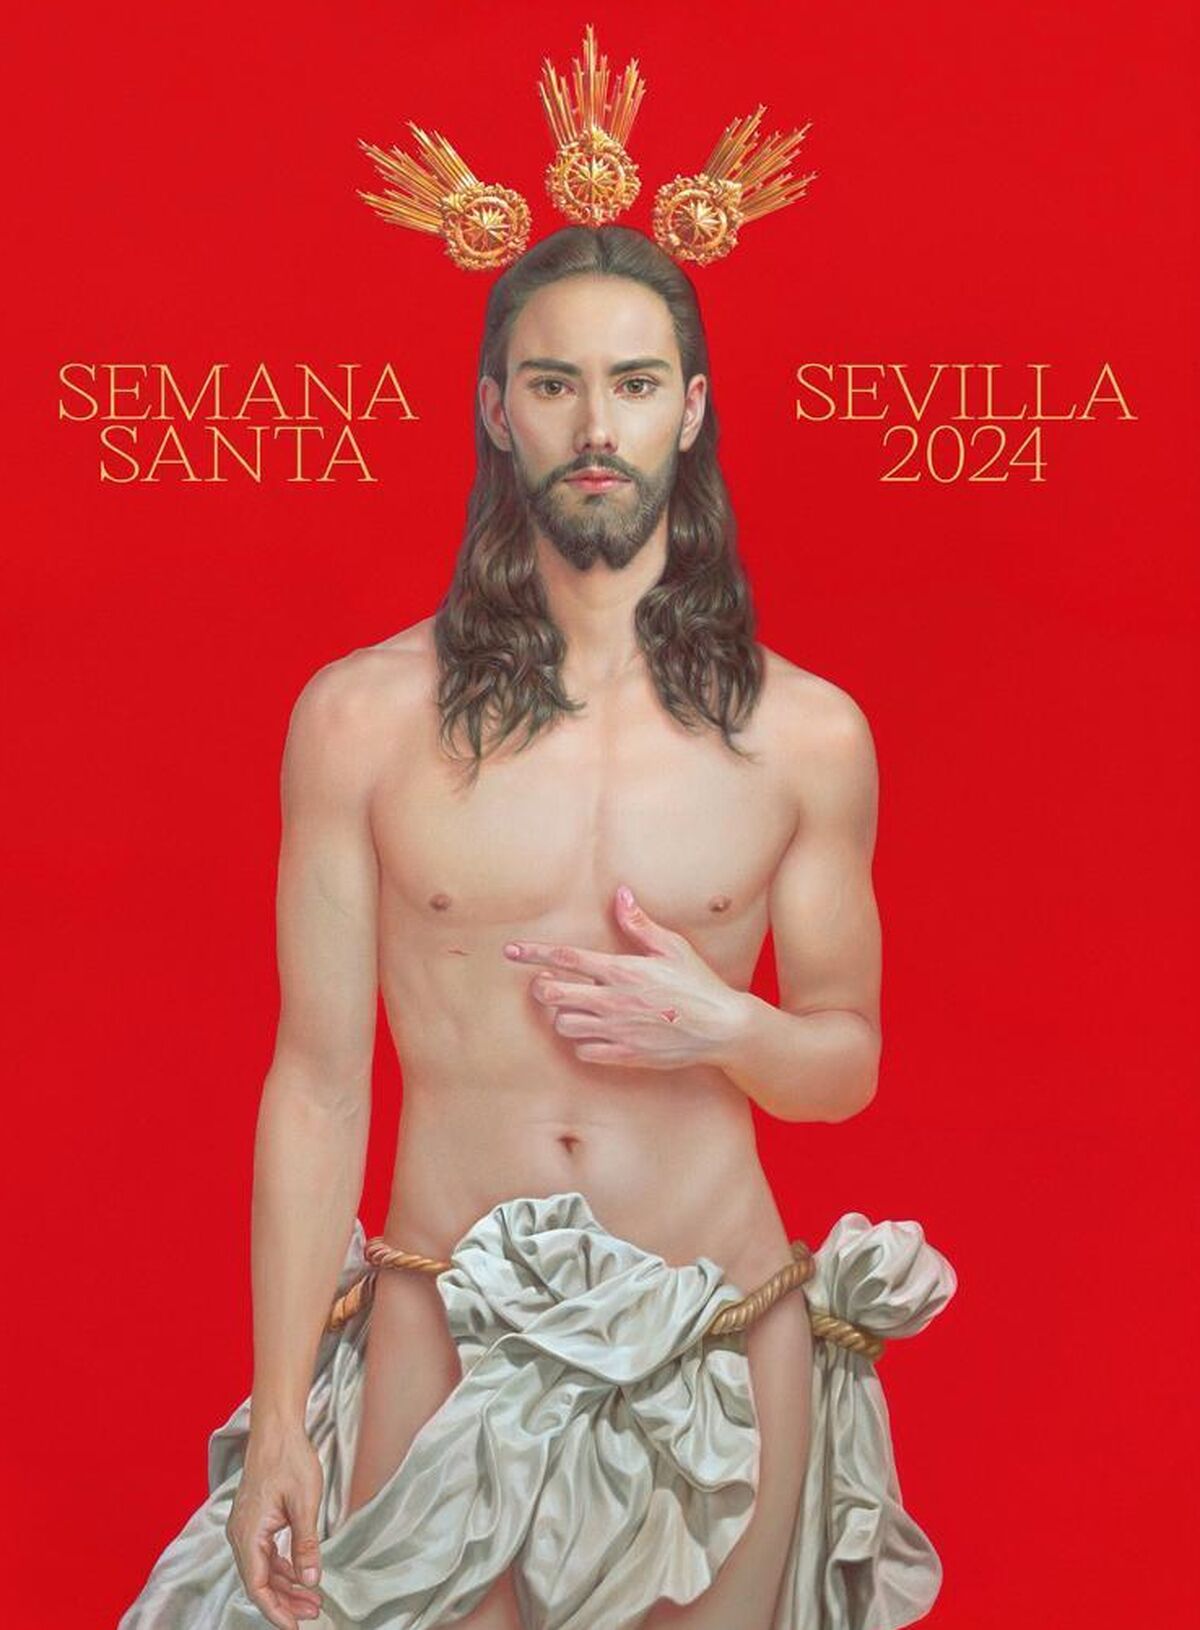 Cartel de la Semana Santa de Sevilla 2024.